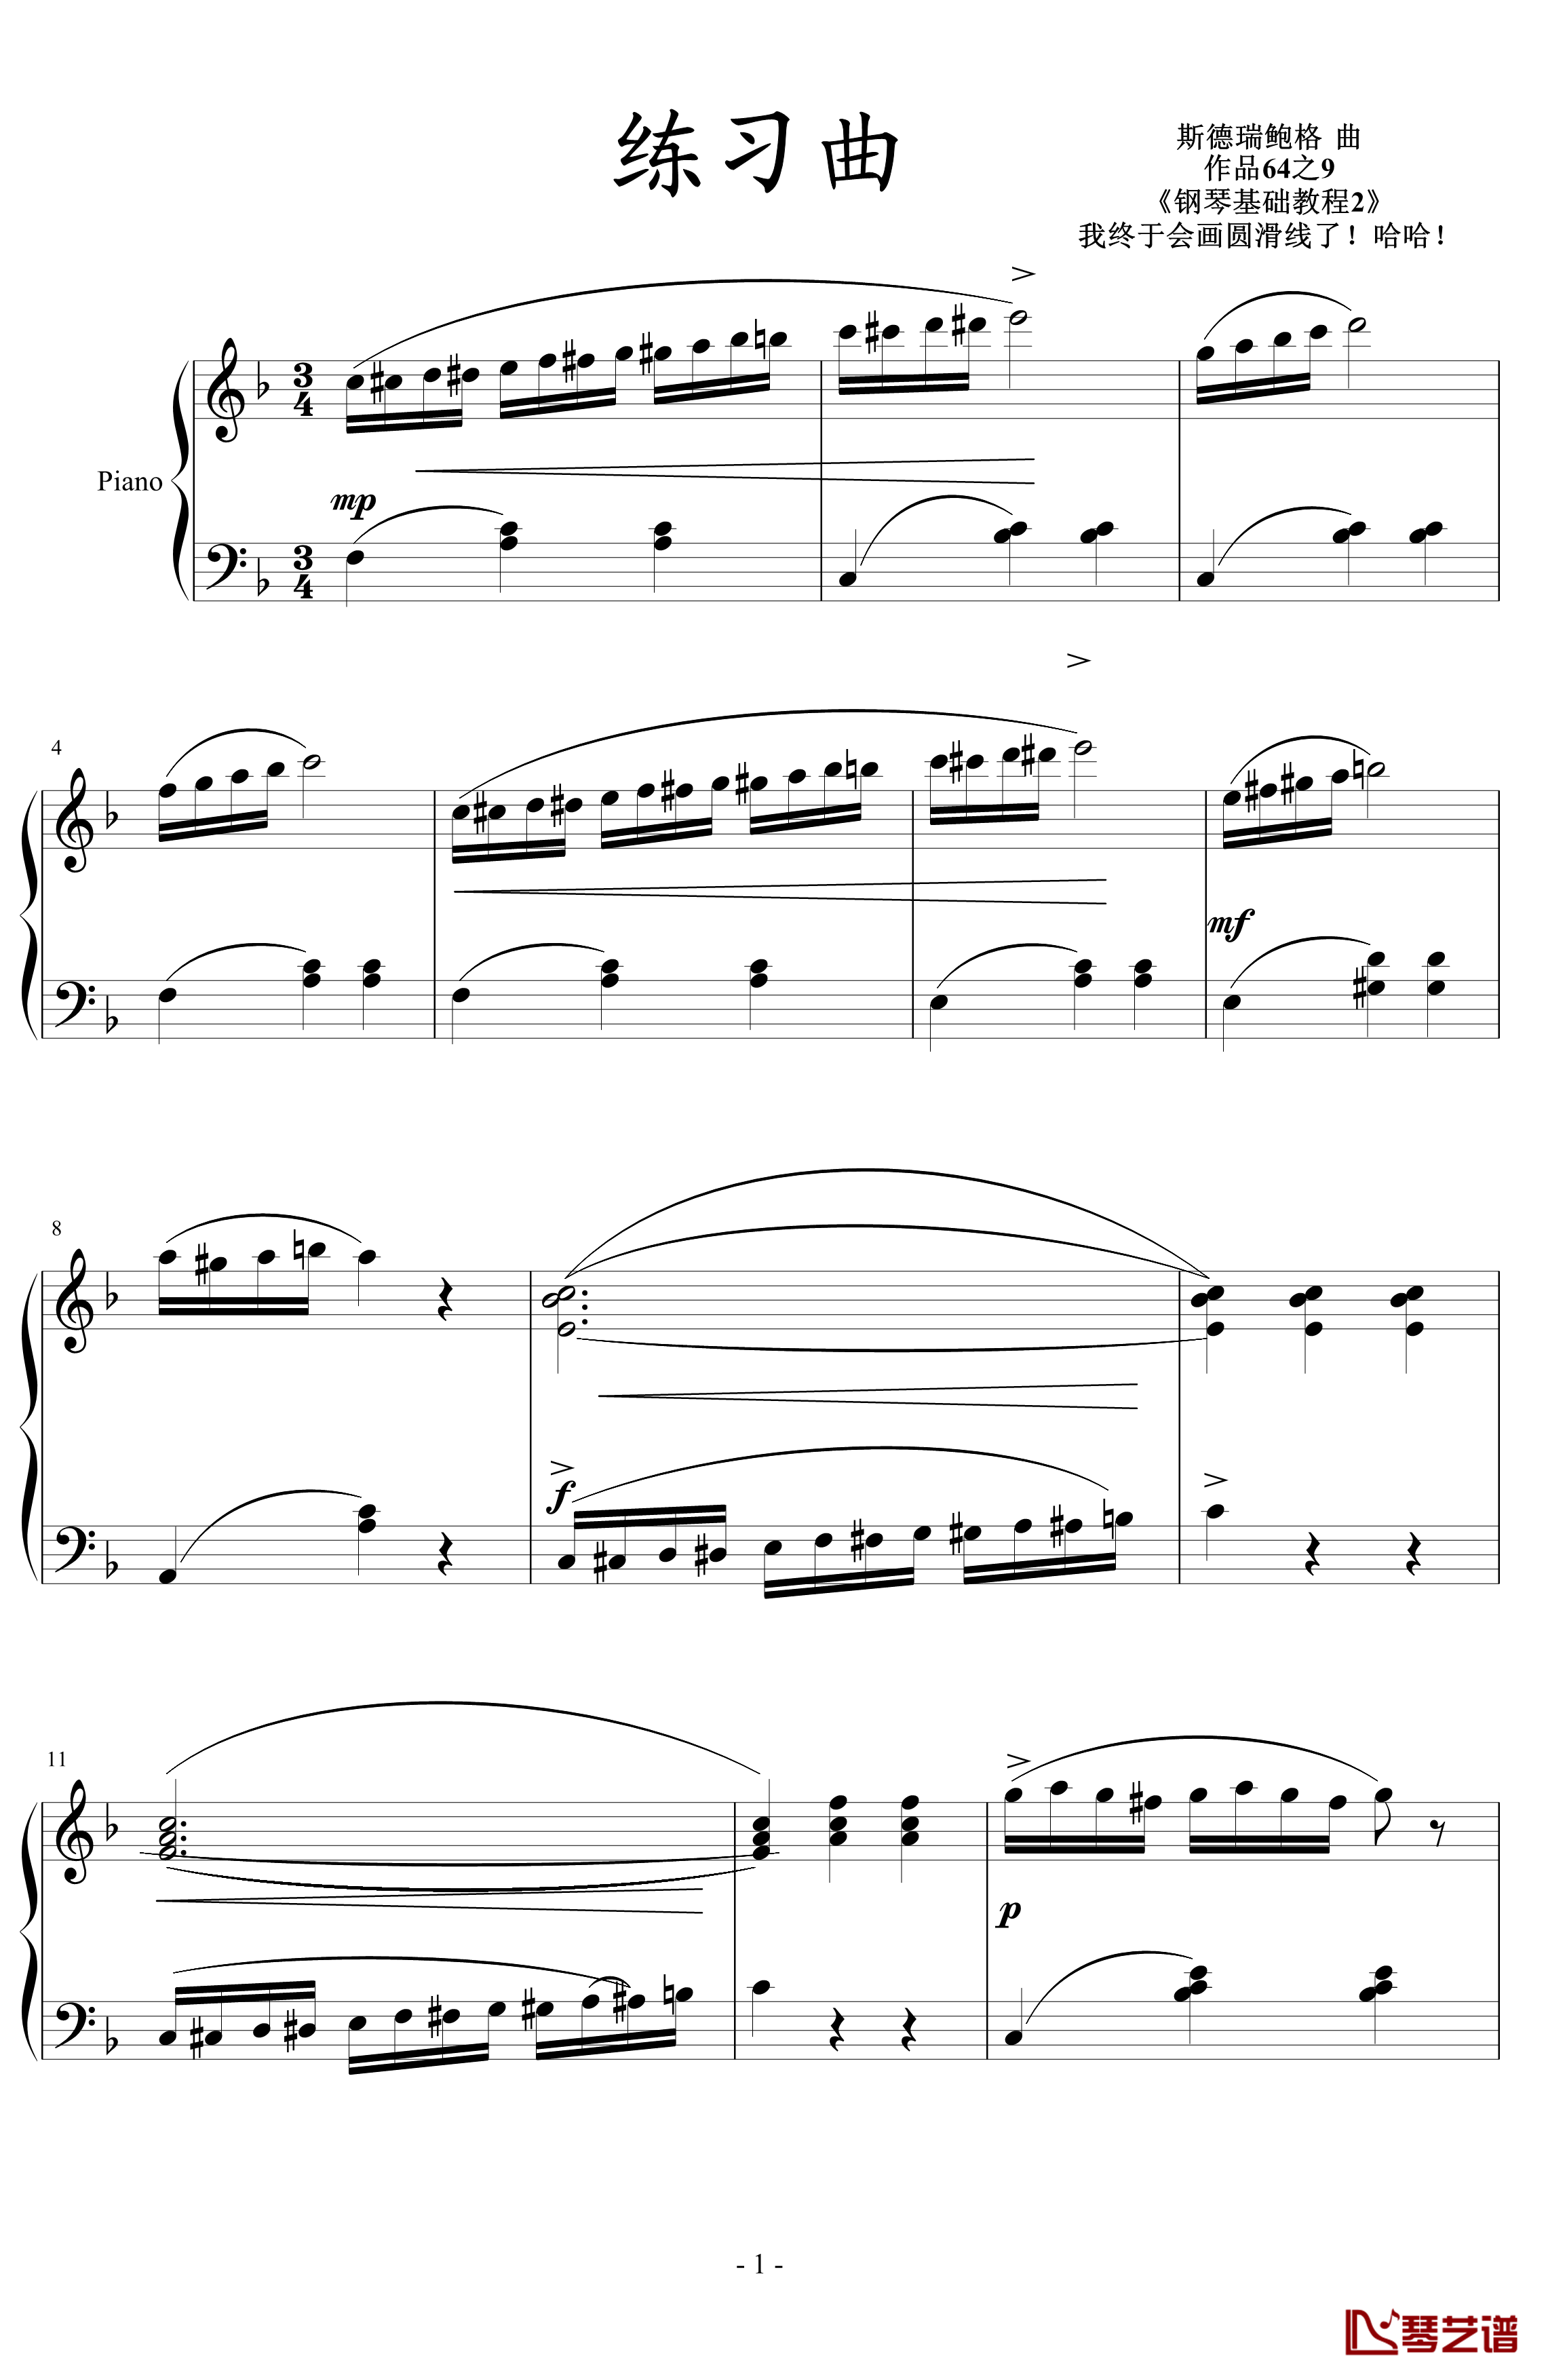 练习曲钢琴谱-斯德瑞鲍格1